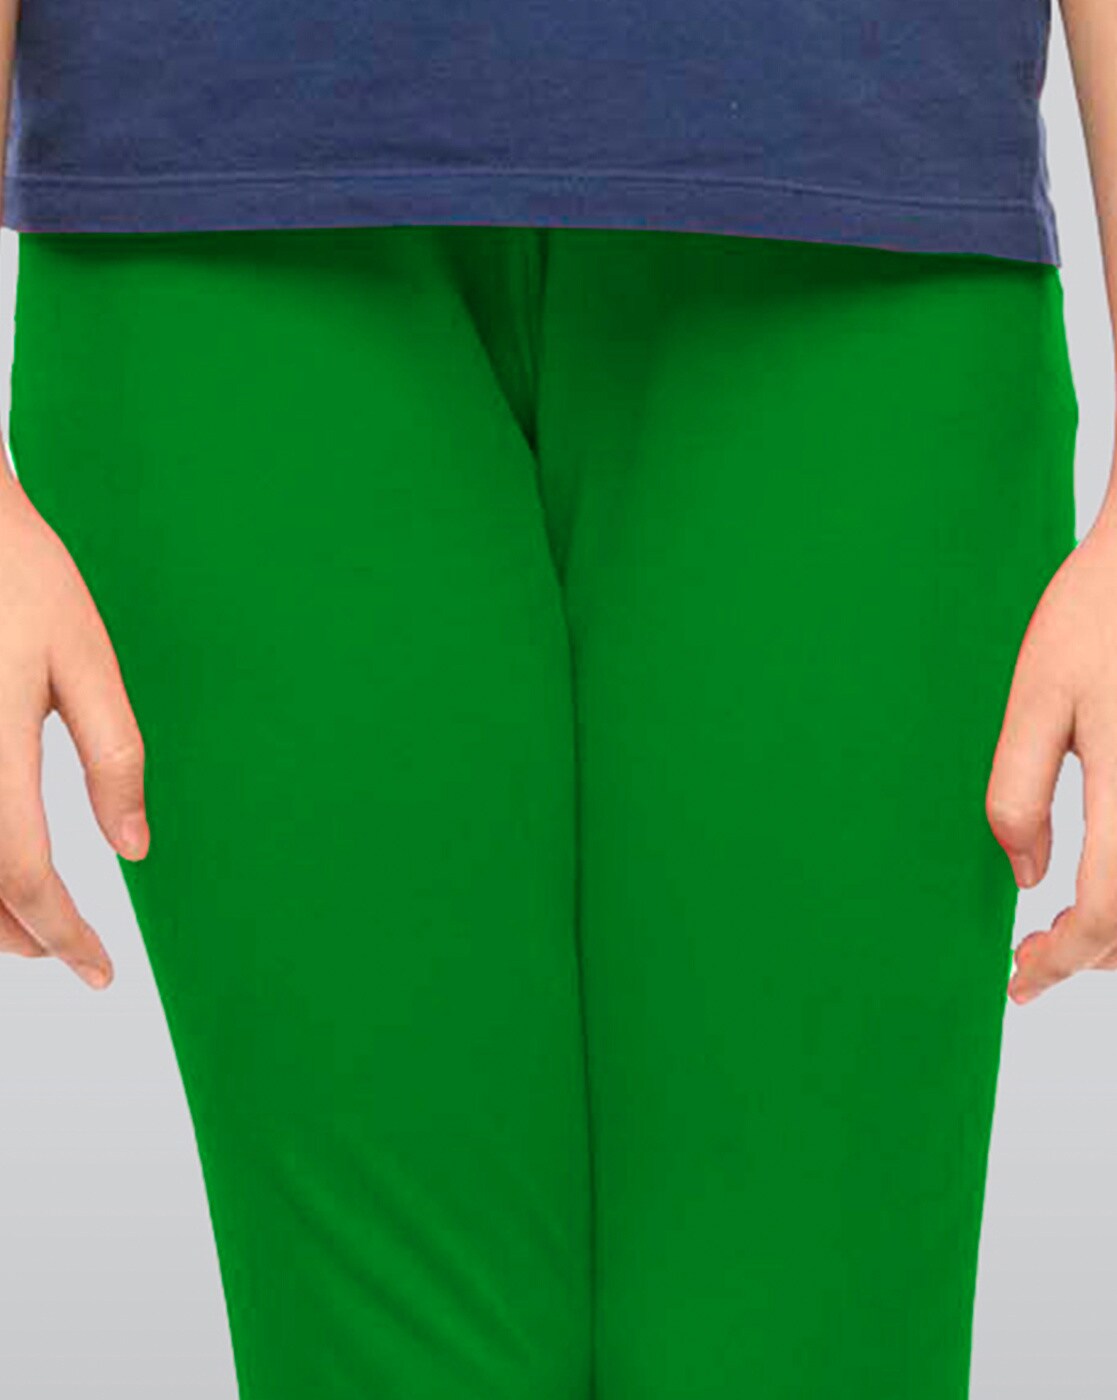 Buy Green Leggings for Girls by LYRA Online